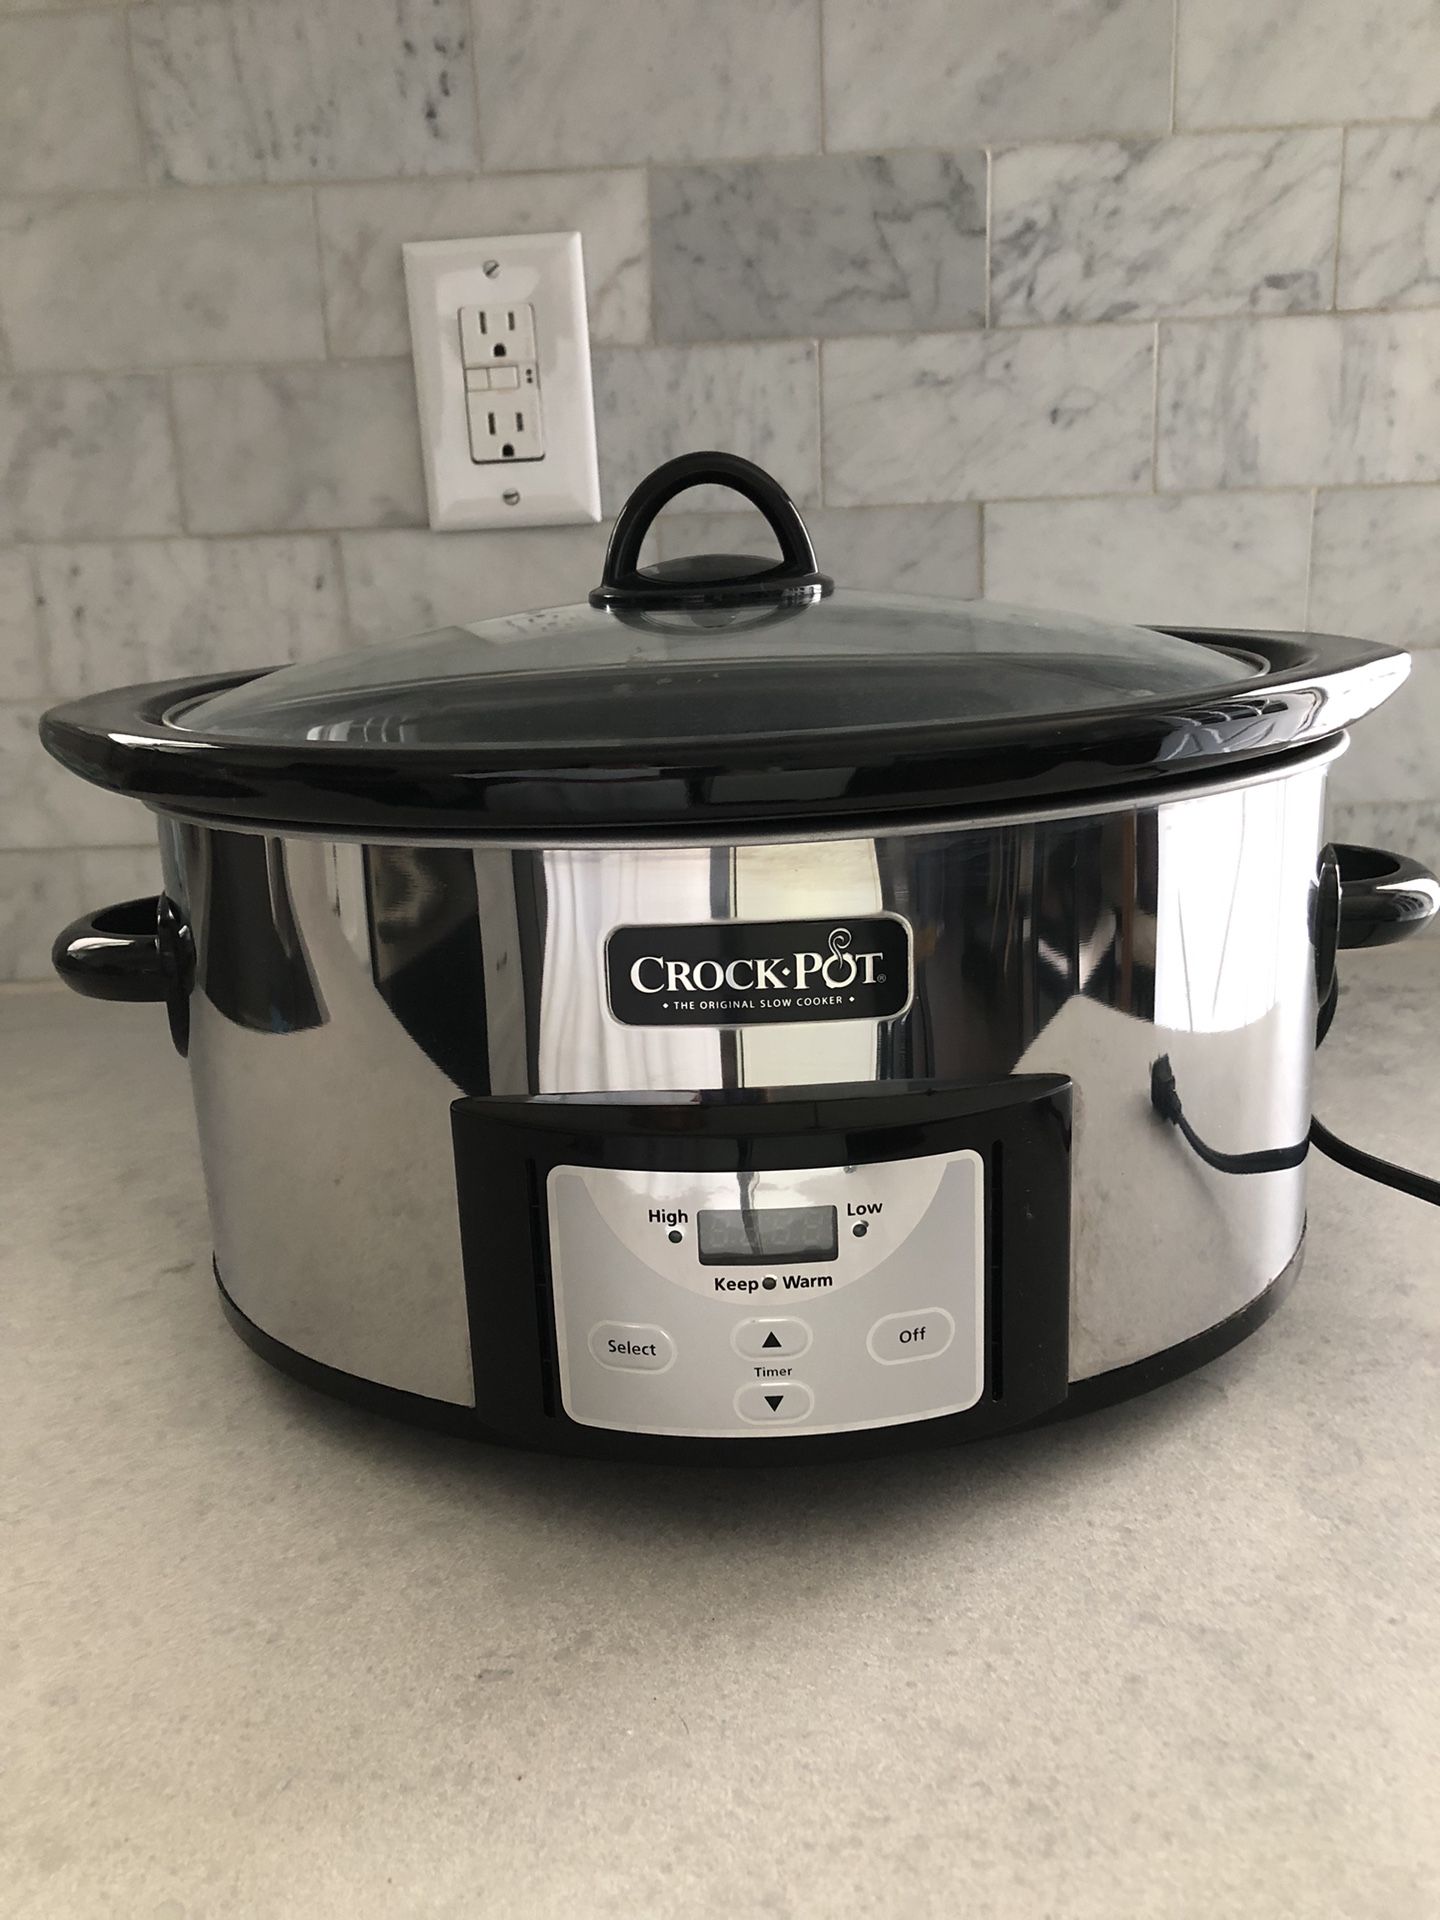 Crockpot 6 Qt. Programmable Slow Cooker for Sale in Stratford, NJ